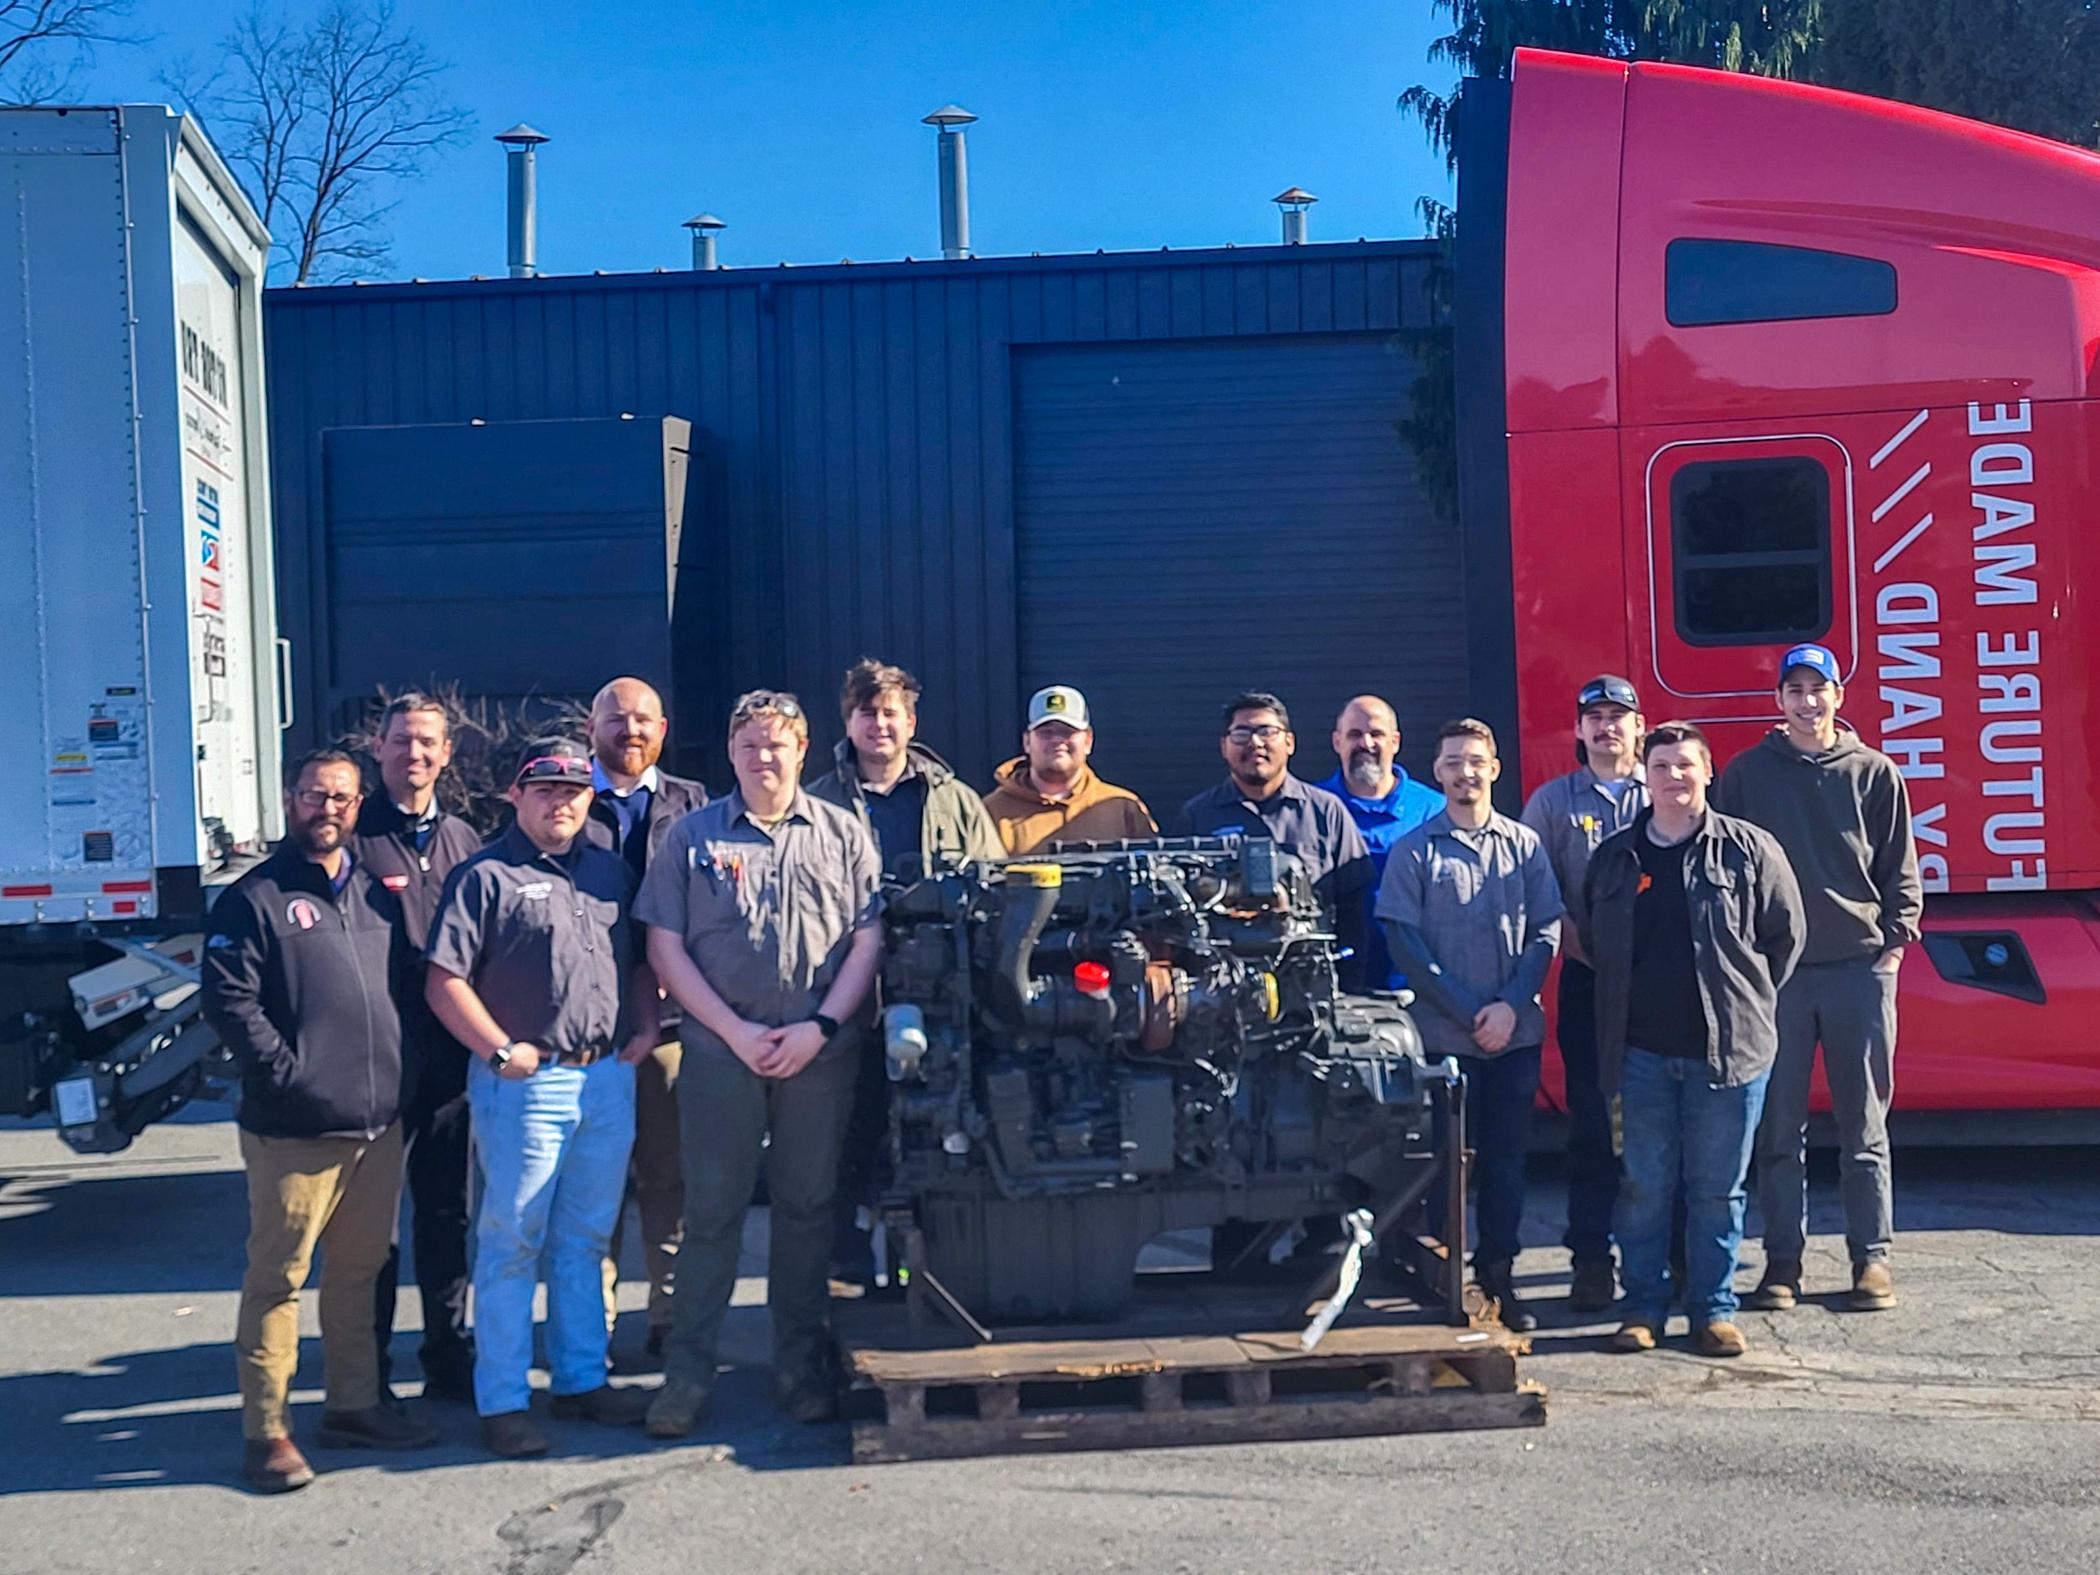 宾州大学的肯沃斯向柴油实验室捐赠了首台同类发动机